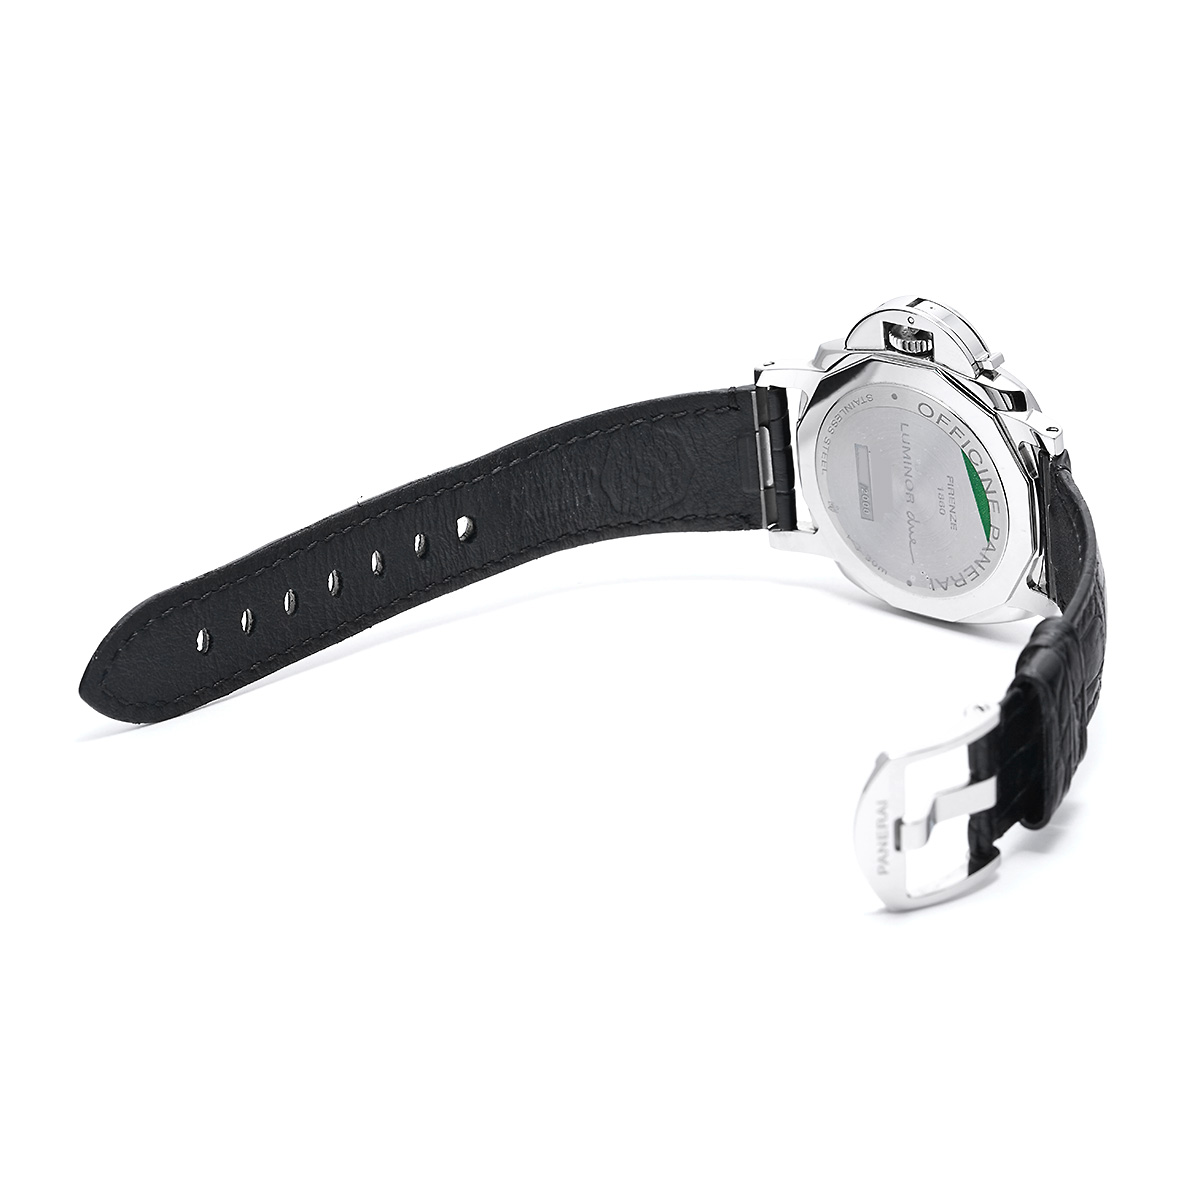 パネライ / PANERAI ルミノール ドゥエ 1950 PAM01250 グレー メンズ 時計 【中古】【wristwatch】